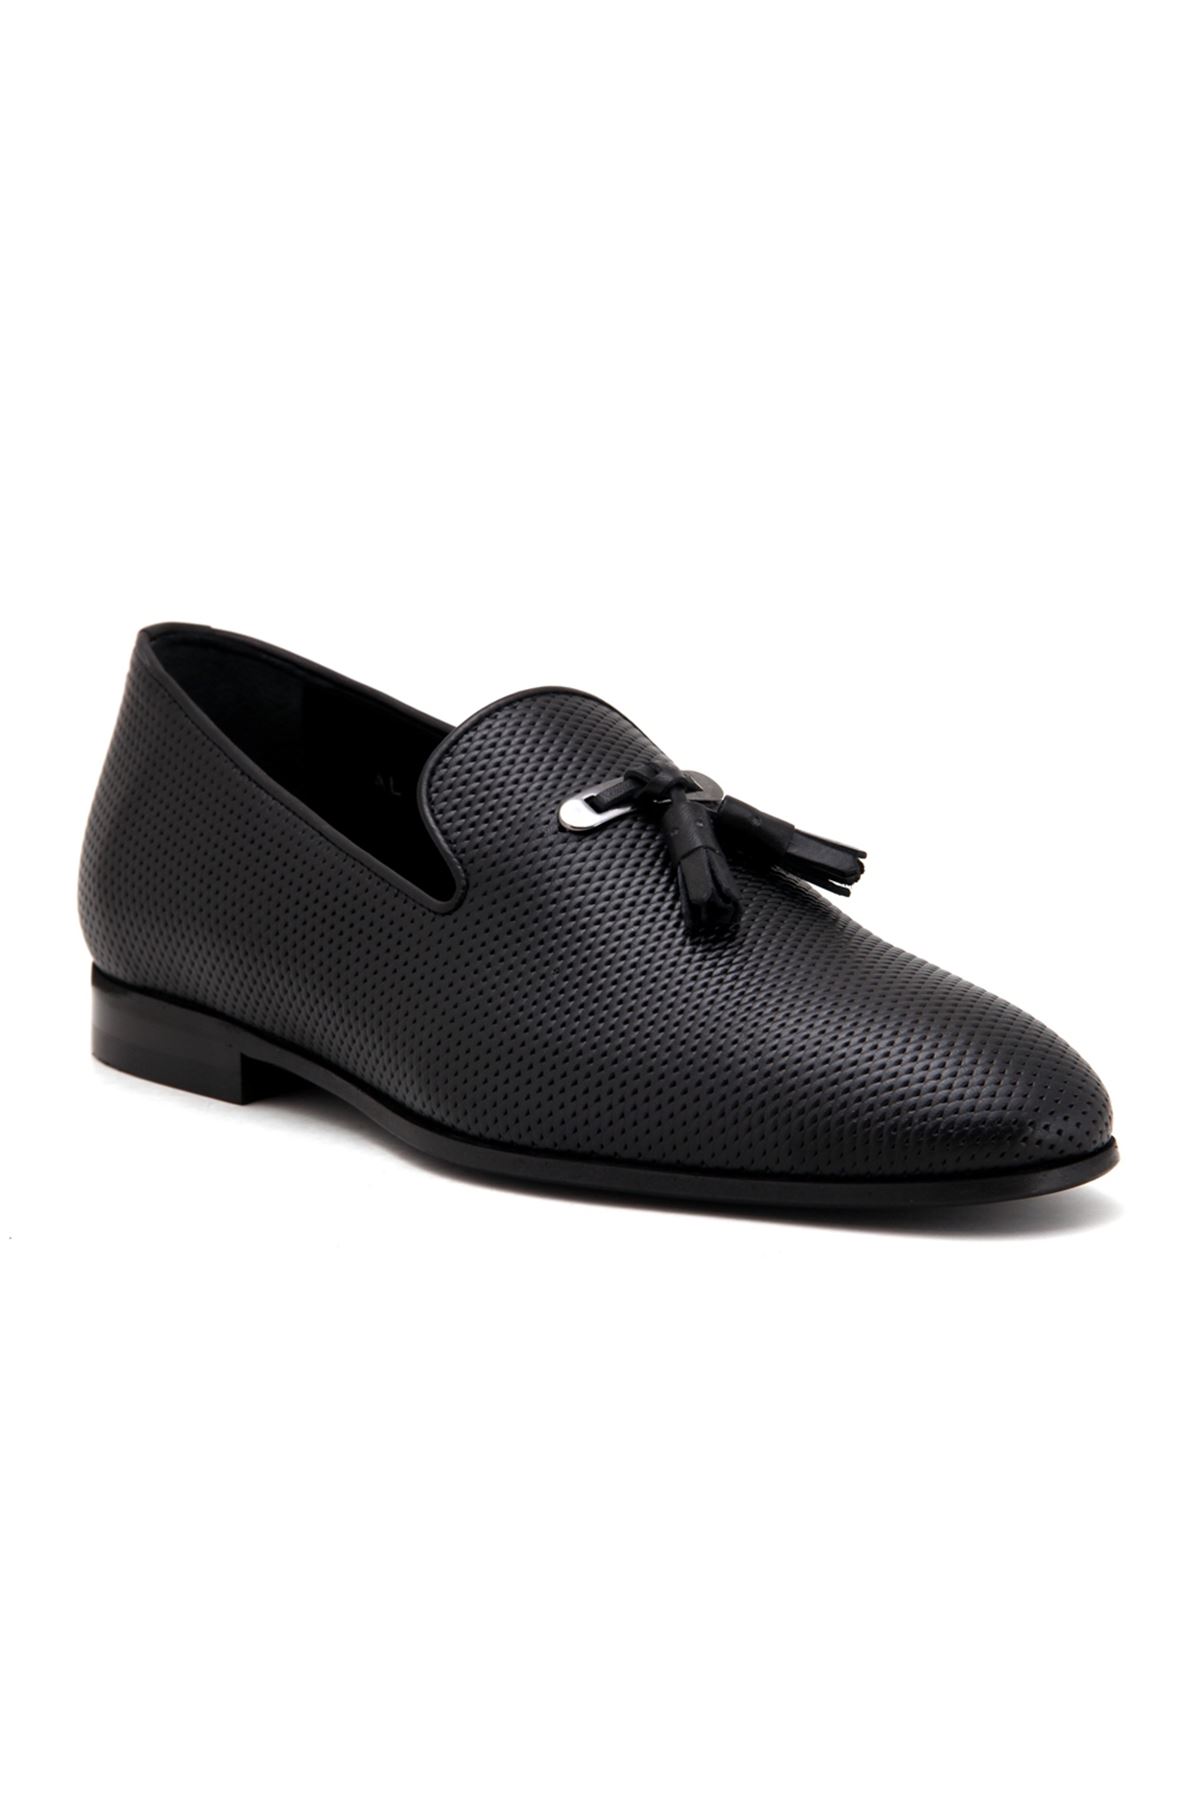 3324 Libero Klasik Erkek Ayakkabı - Siyah